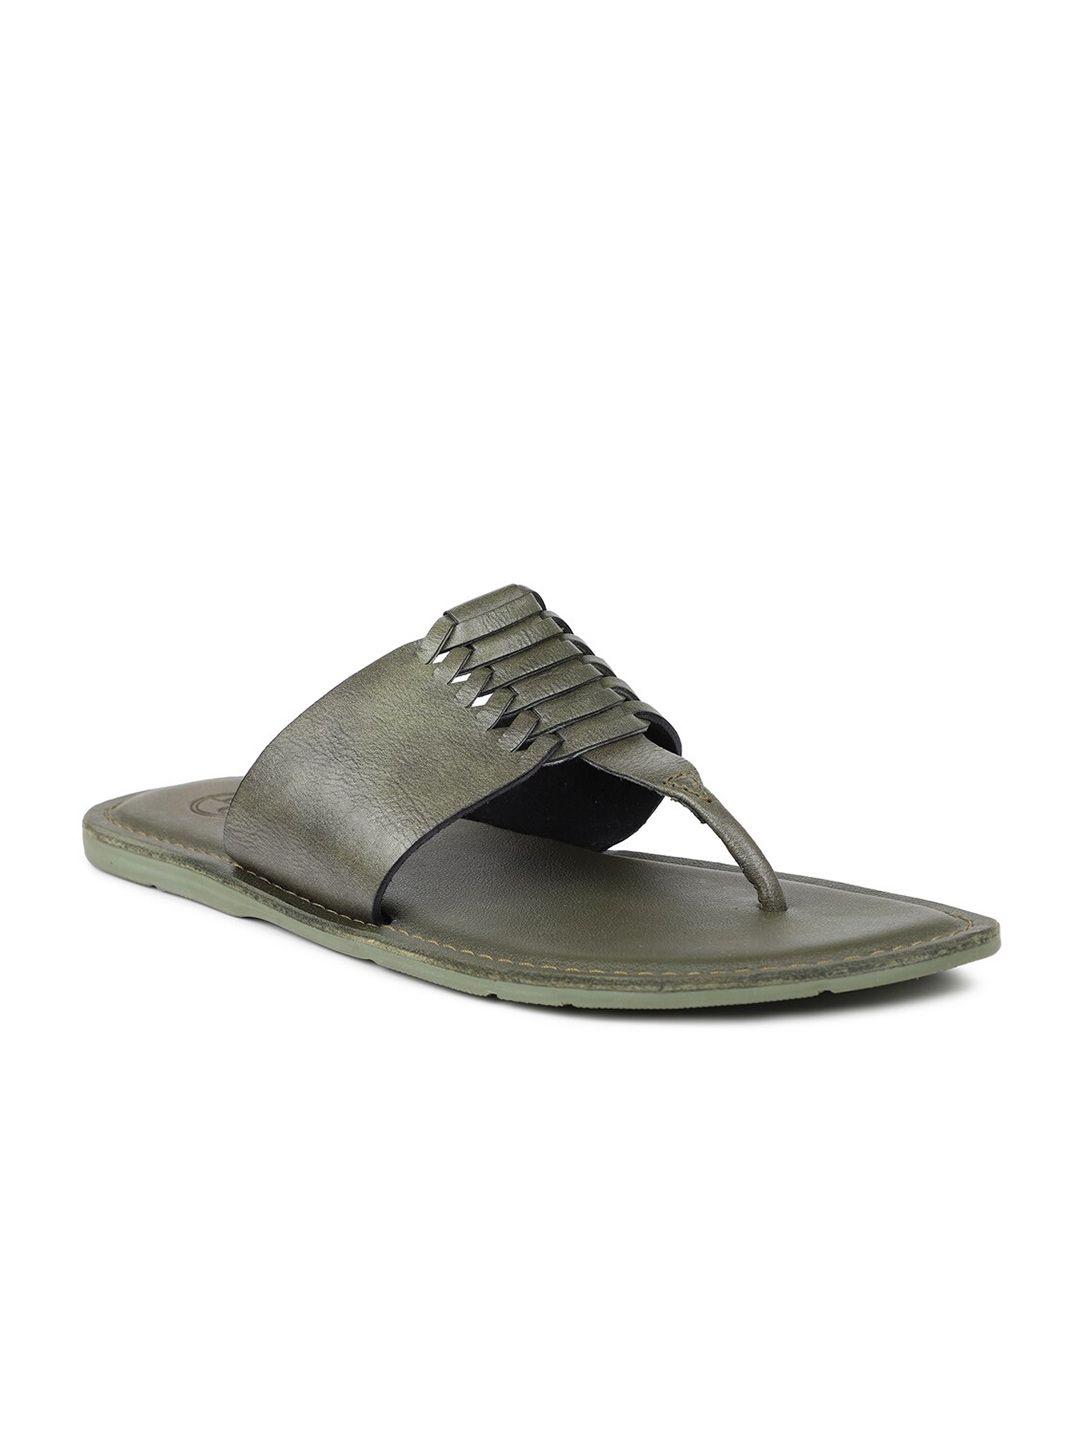 privo men olive green leather comfort sandals